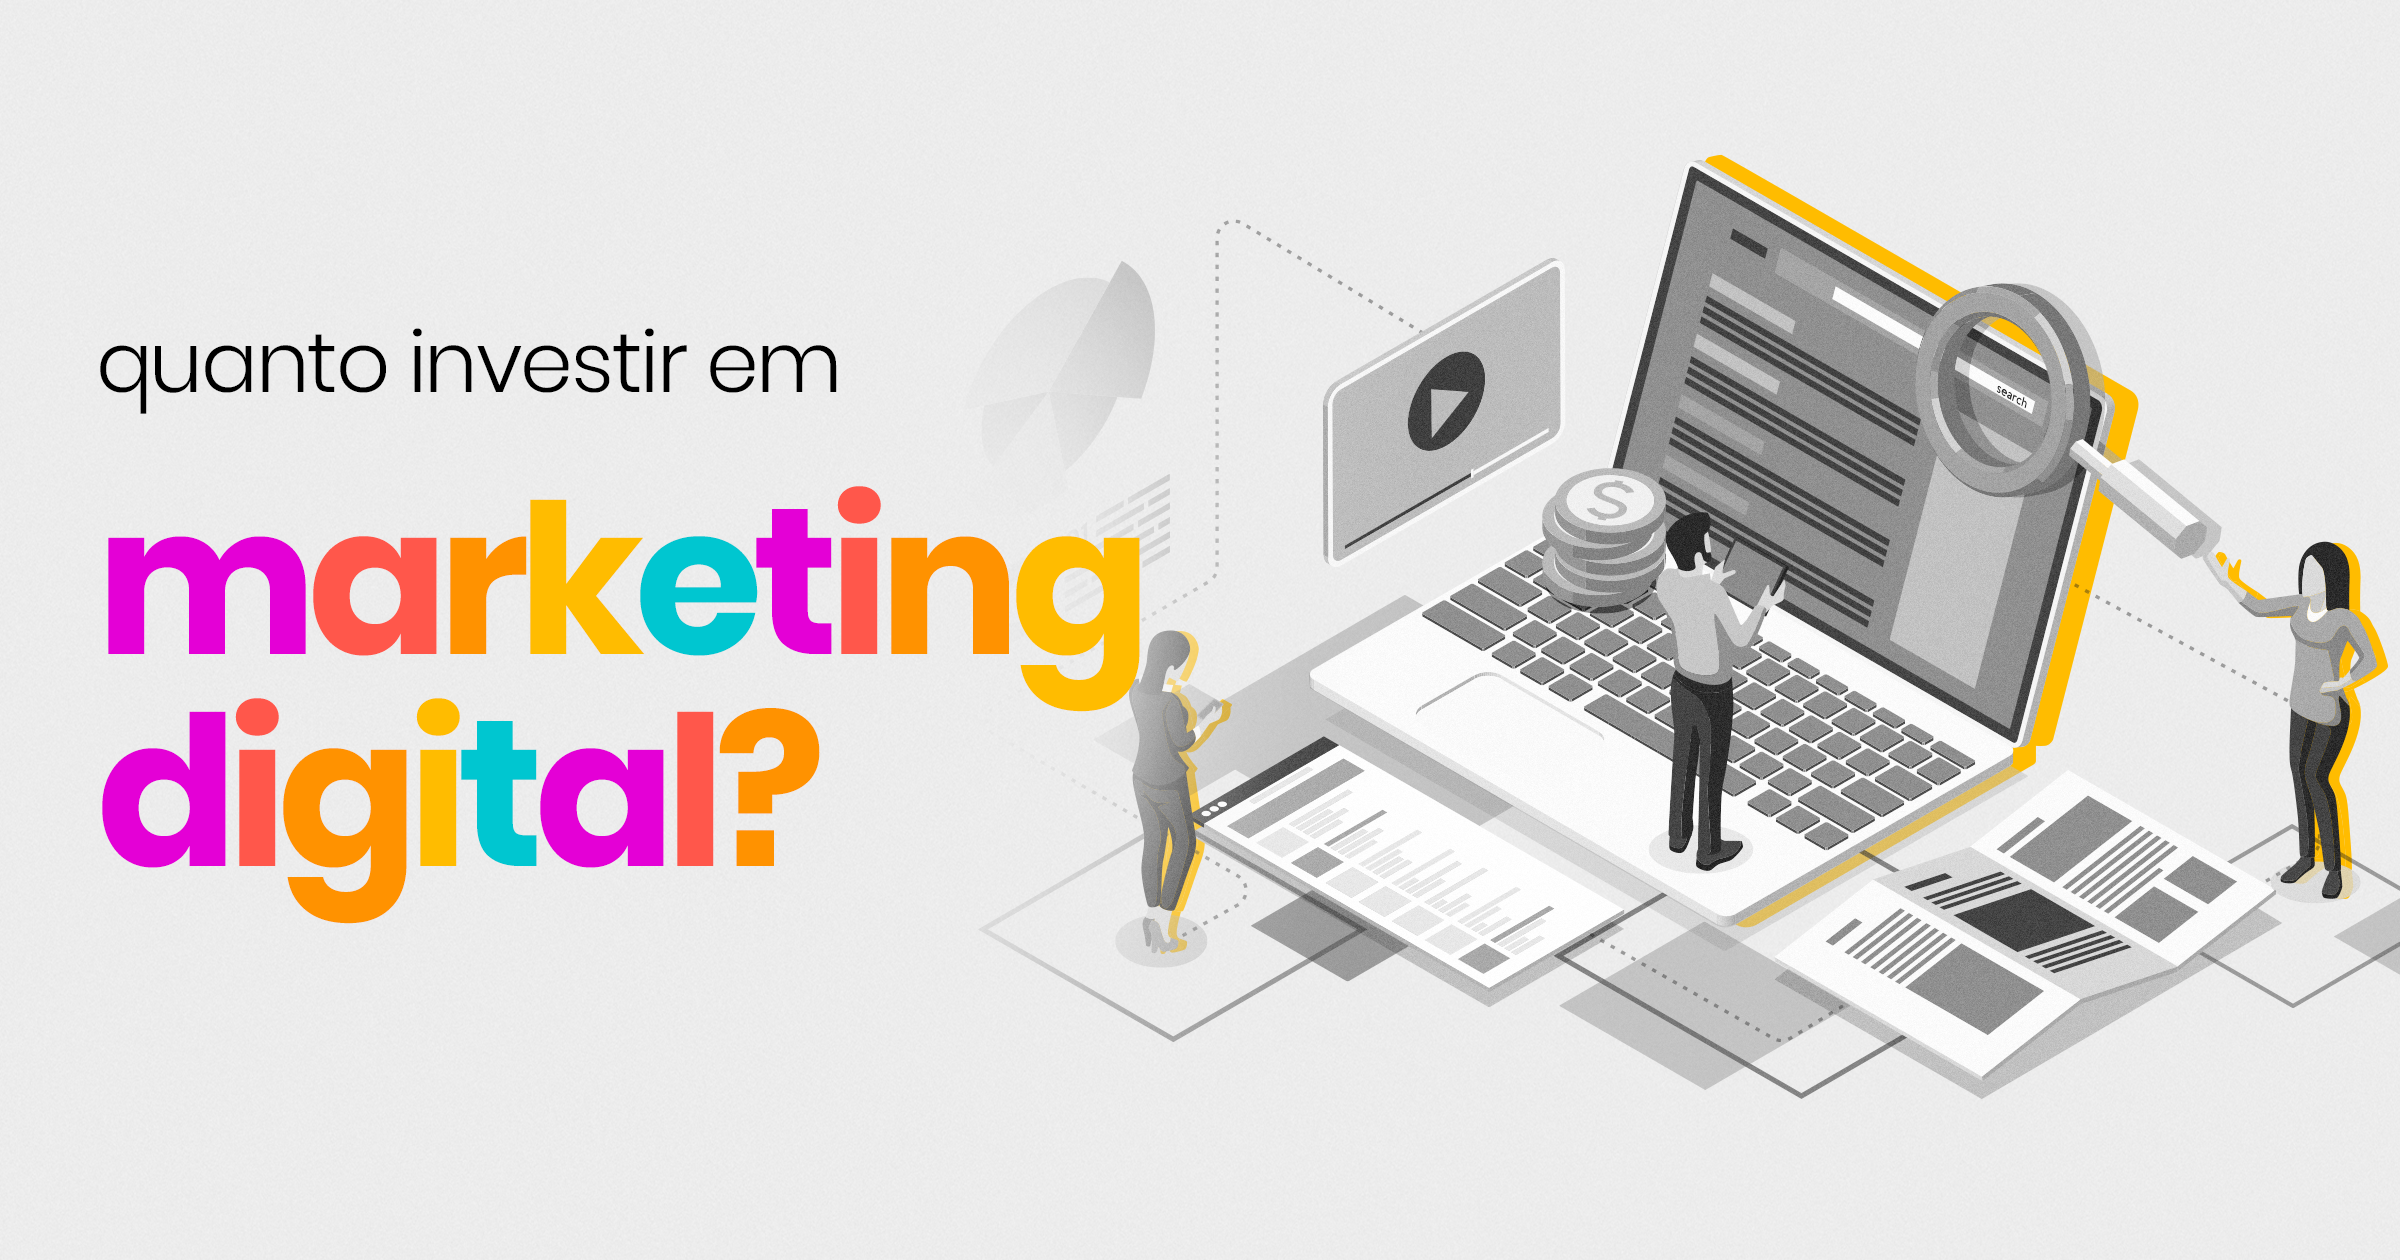 Quanto investir em marketing digital?